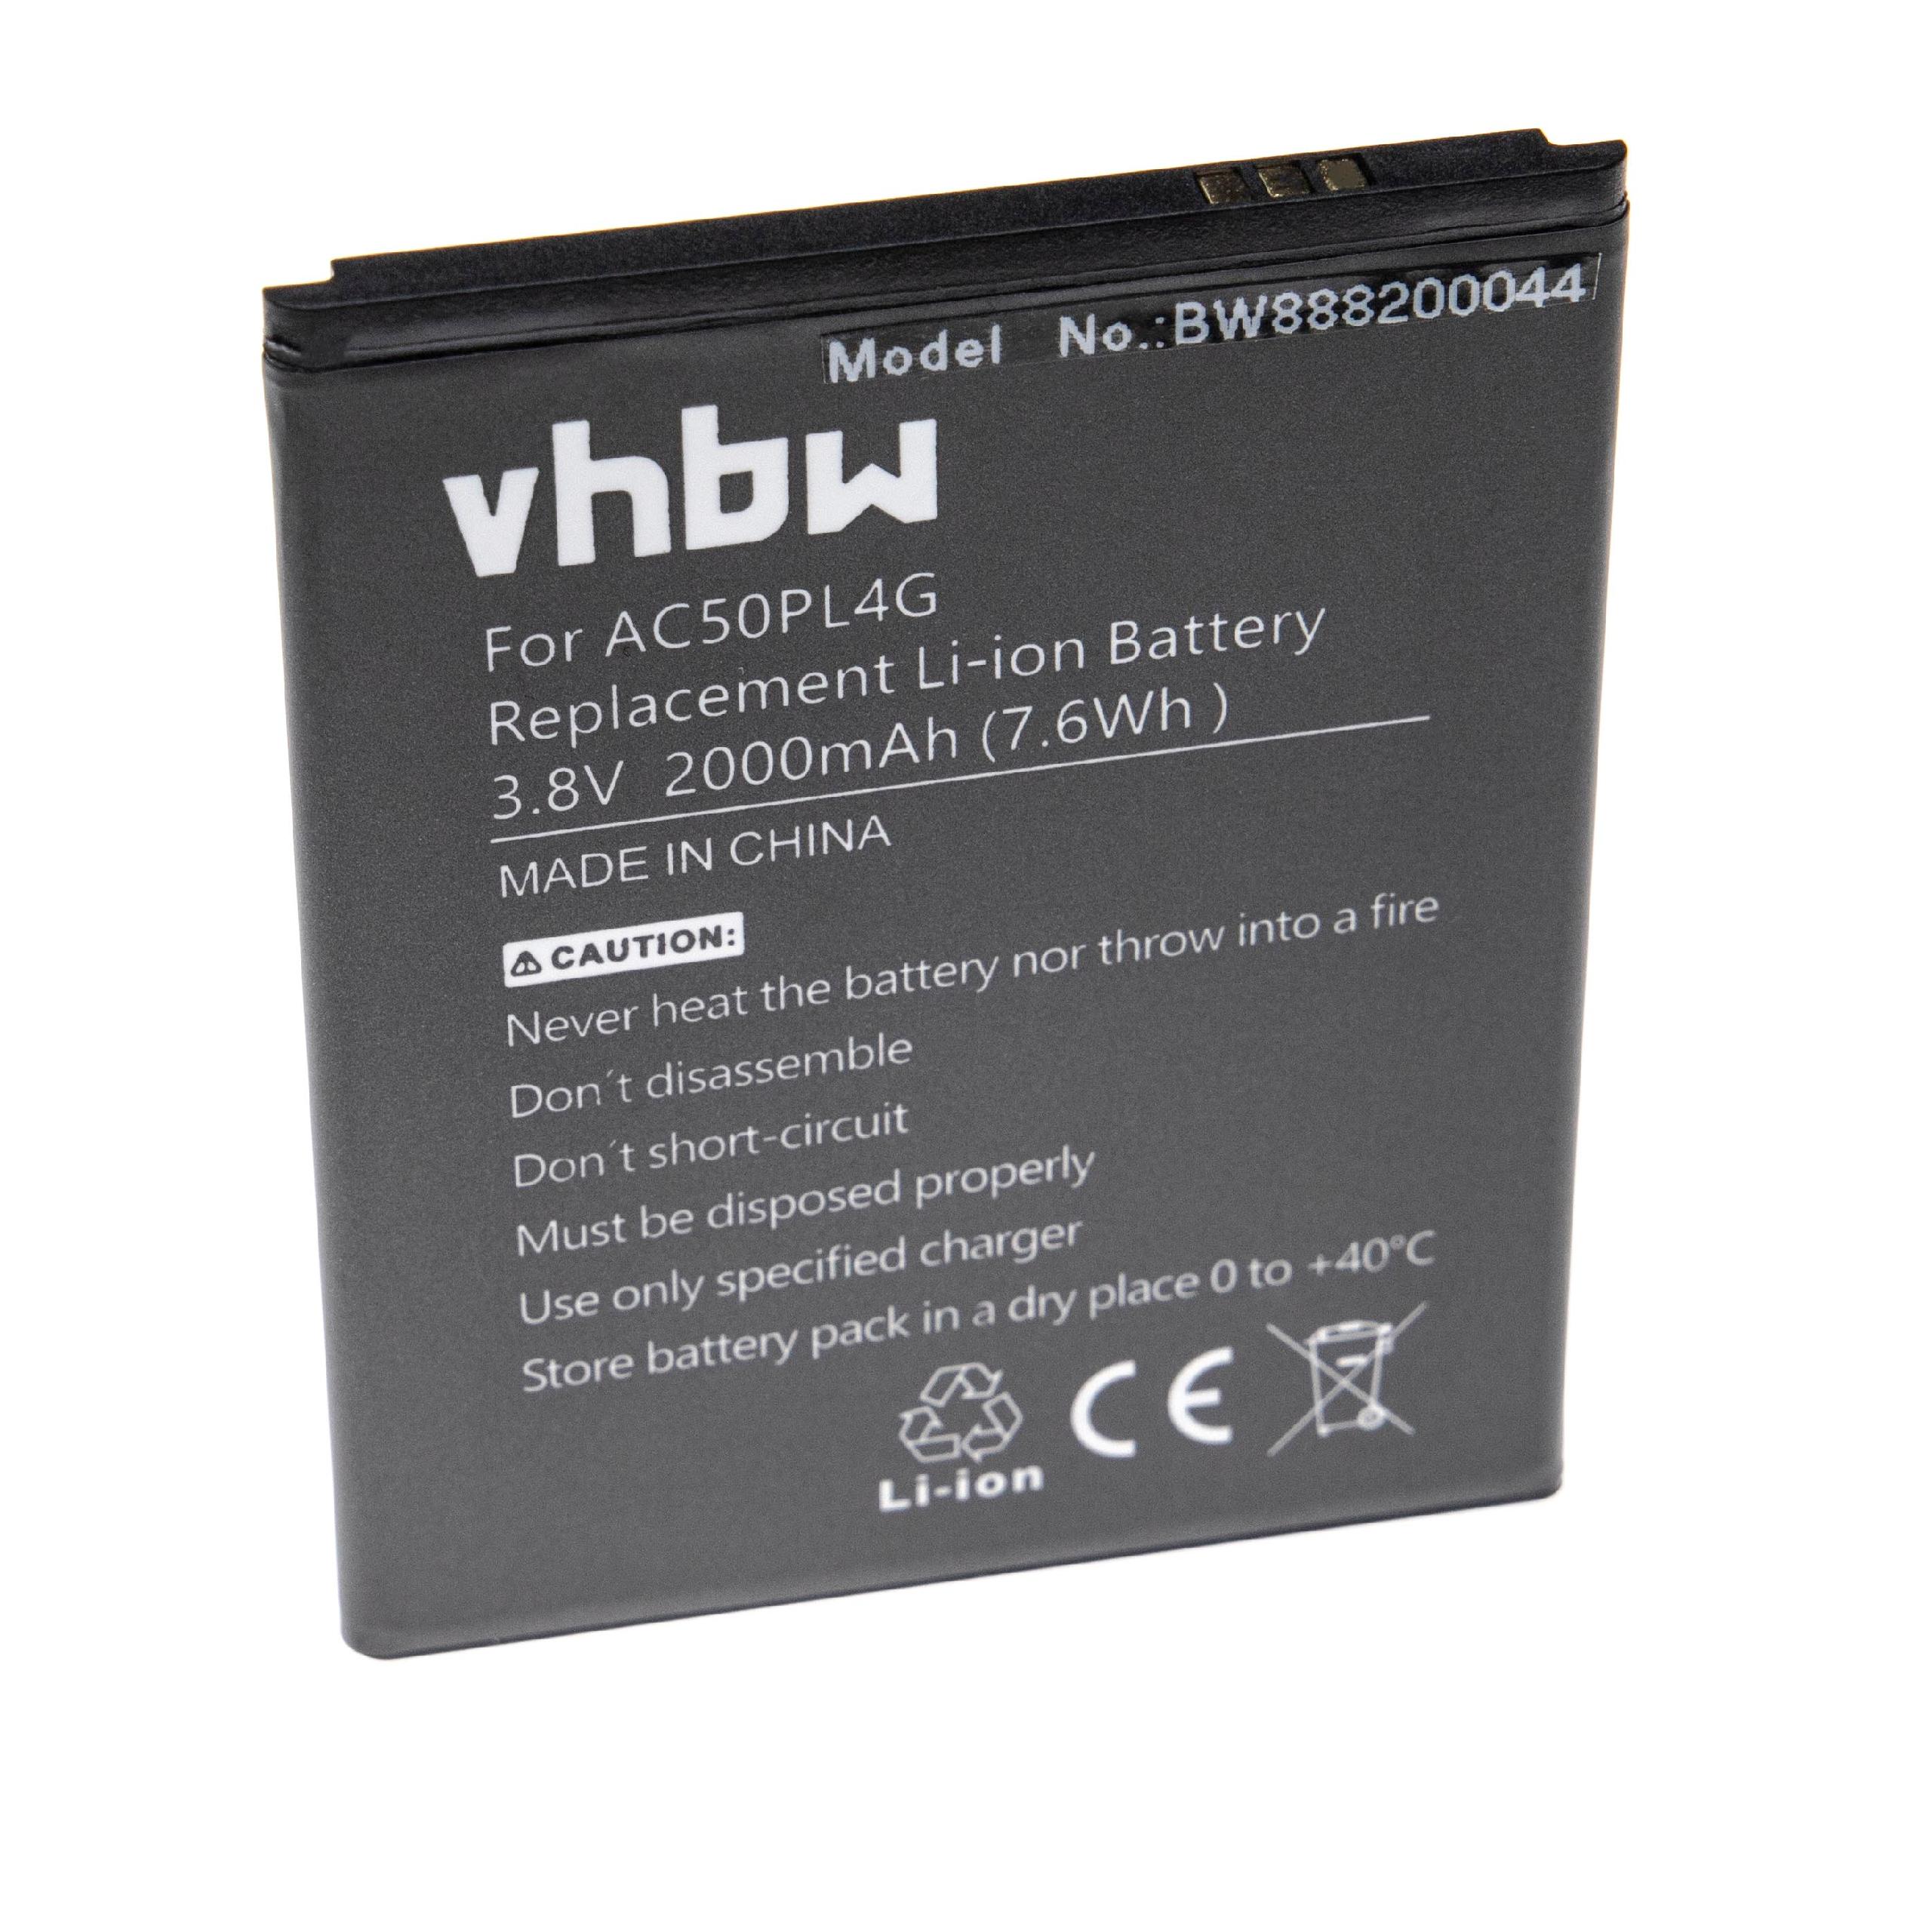 Batterie remplace Archos AC50PL4G pour téléphone portable - 2000mAh, 3,8V, Li-ion